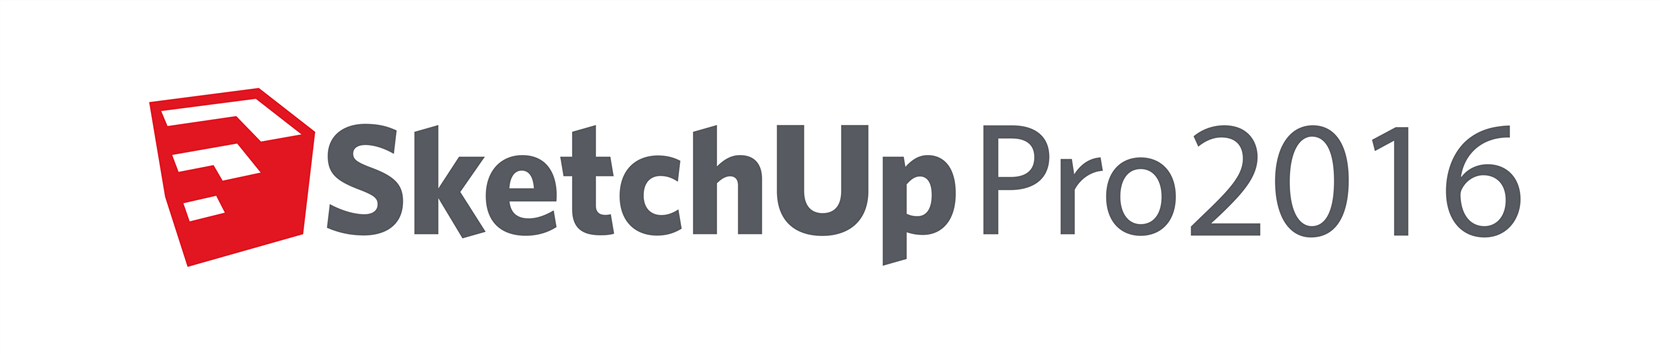 SketchUp logo